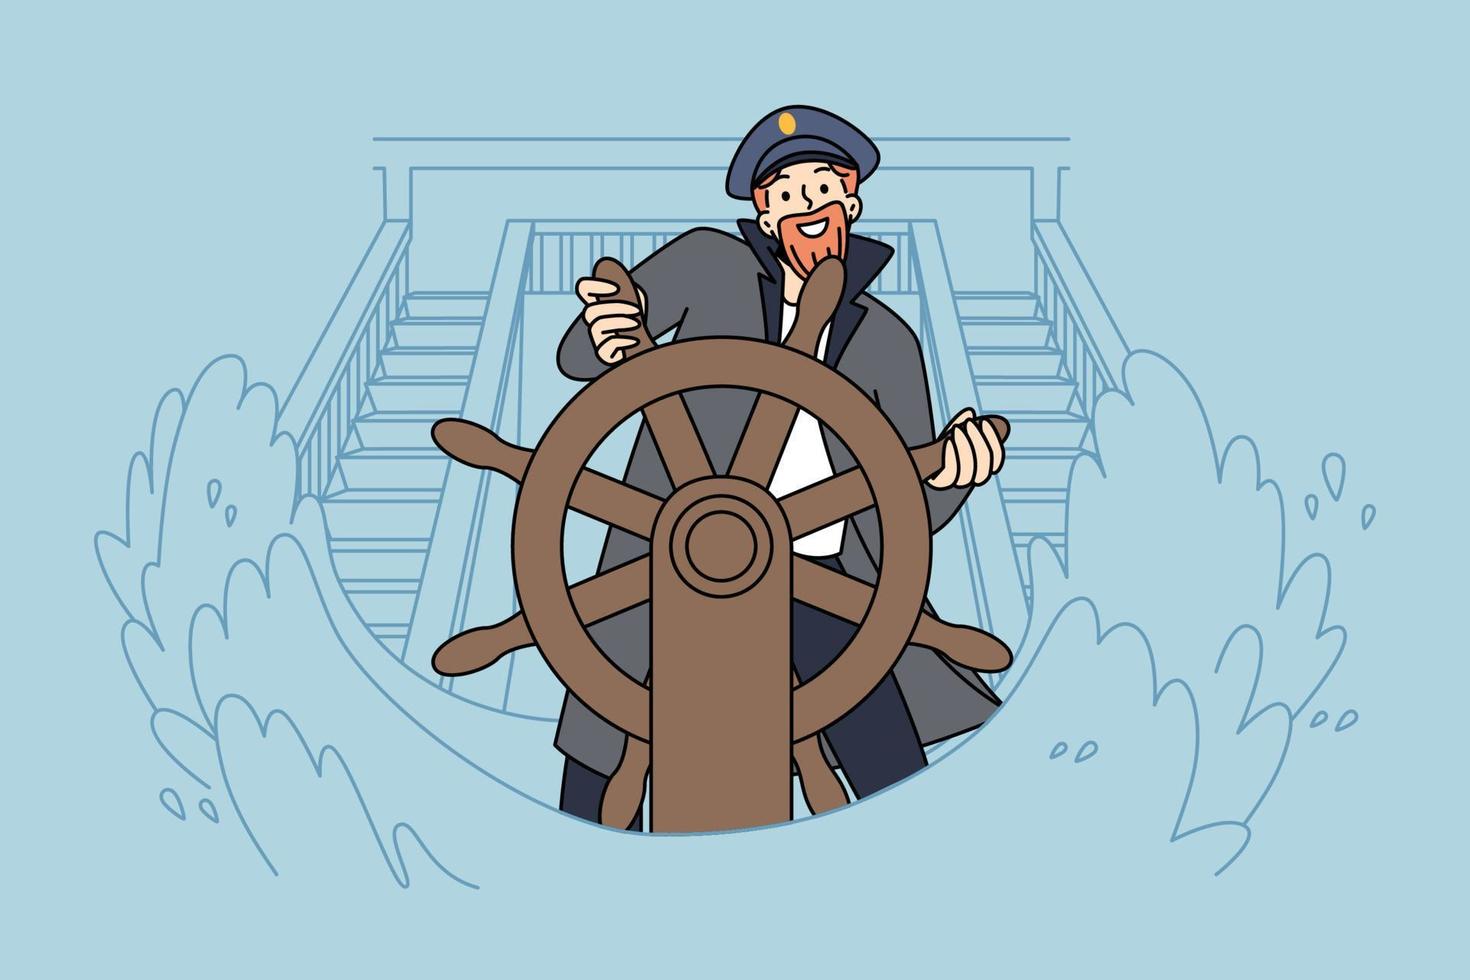 lächelnder kapitän, der während des seesturms am schiffsrad steht. glücklicher skipper am bootssteuerstand bei ozeanwellen. Meereszeit und Meereslebewesen. Vektor-Illustration. vektor